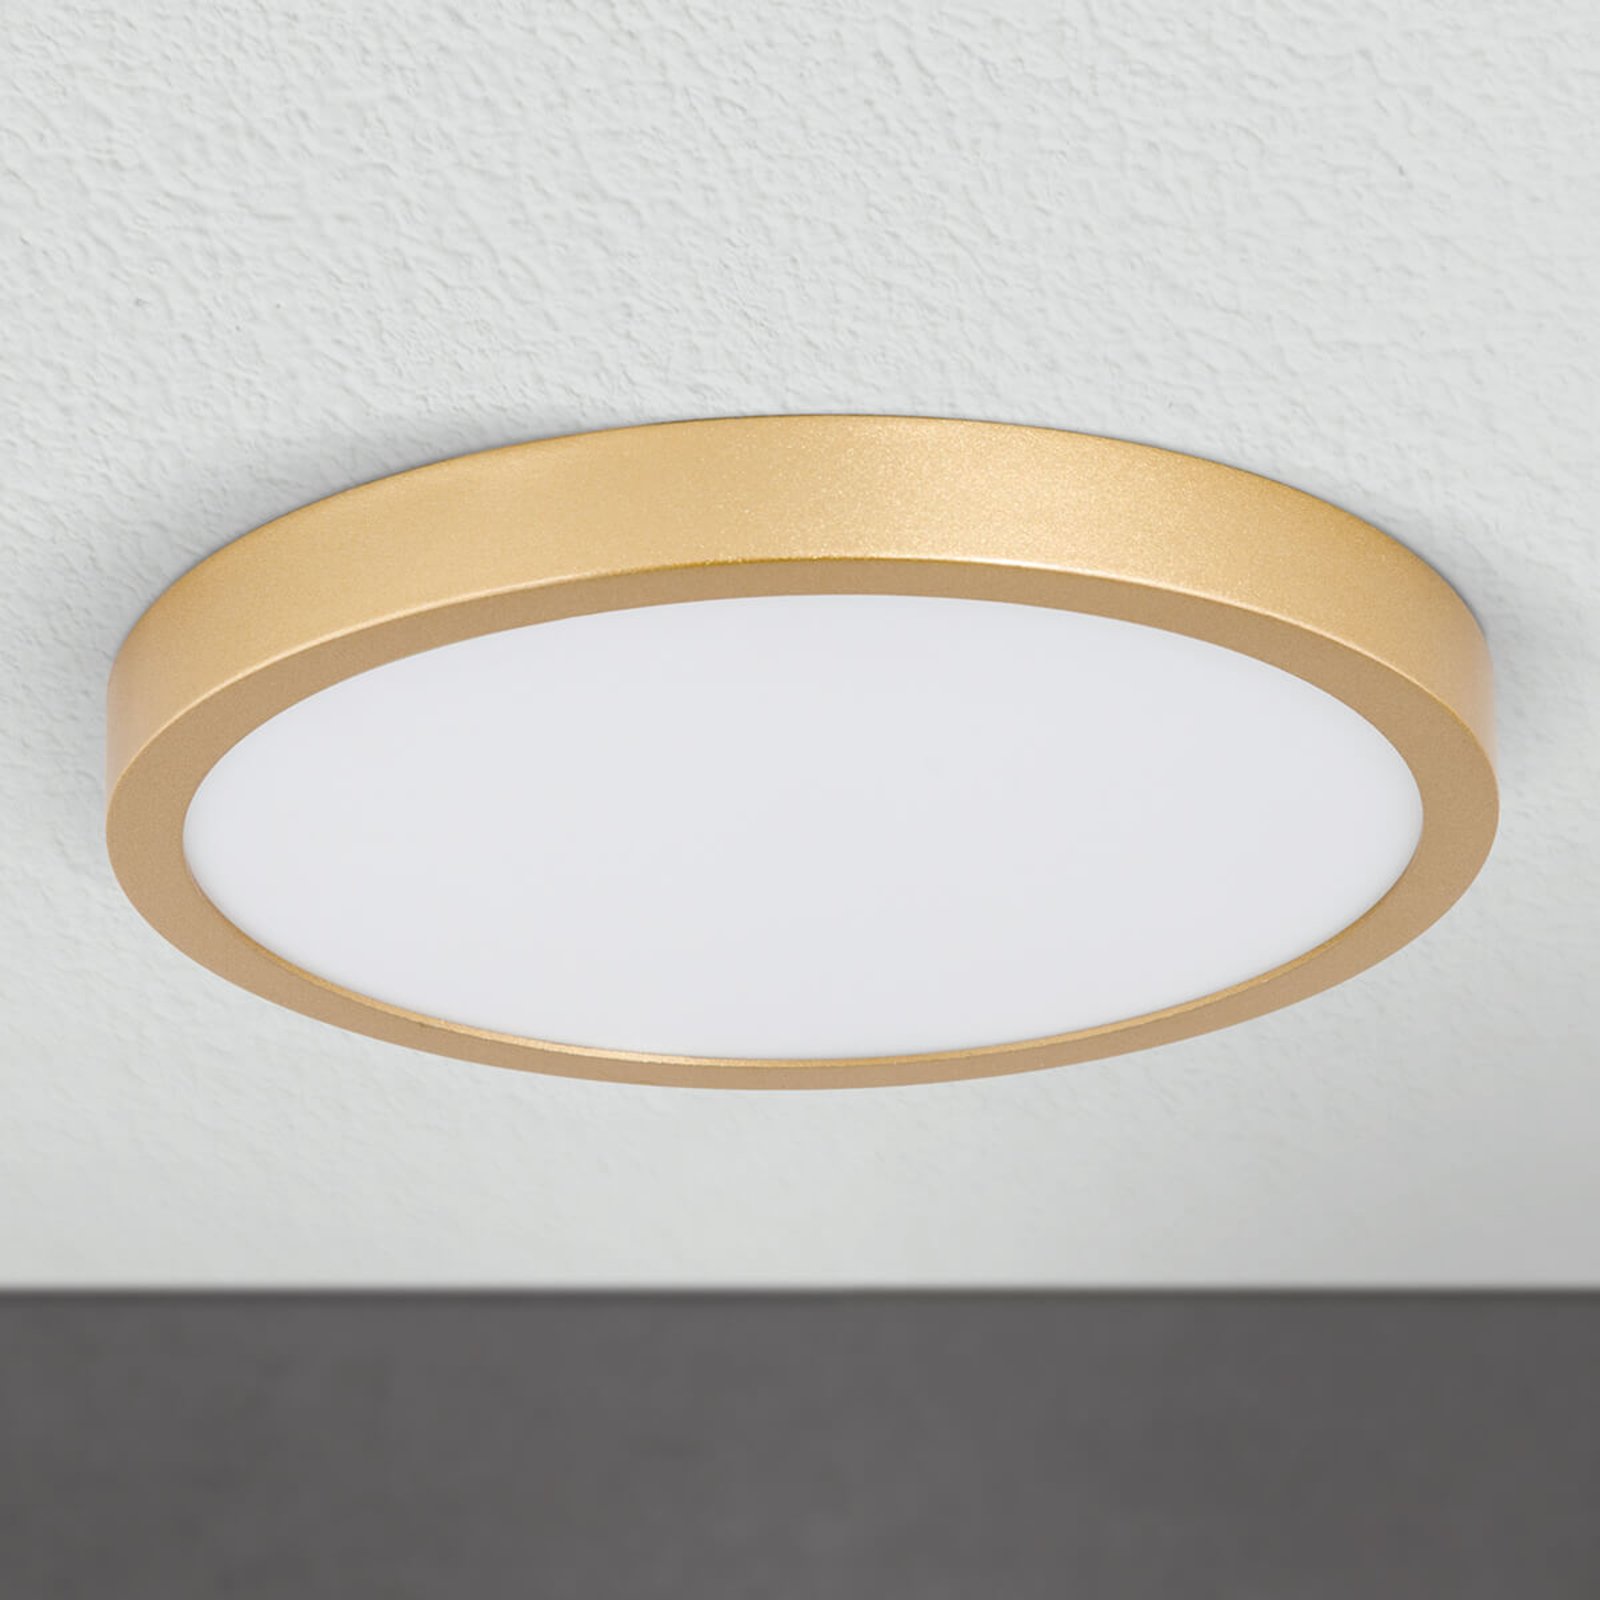 LED-Deckenleuchte Vika, rund, gold matt, Ø 23cm